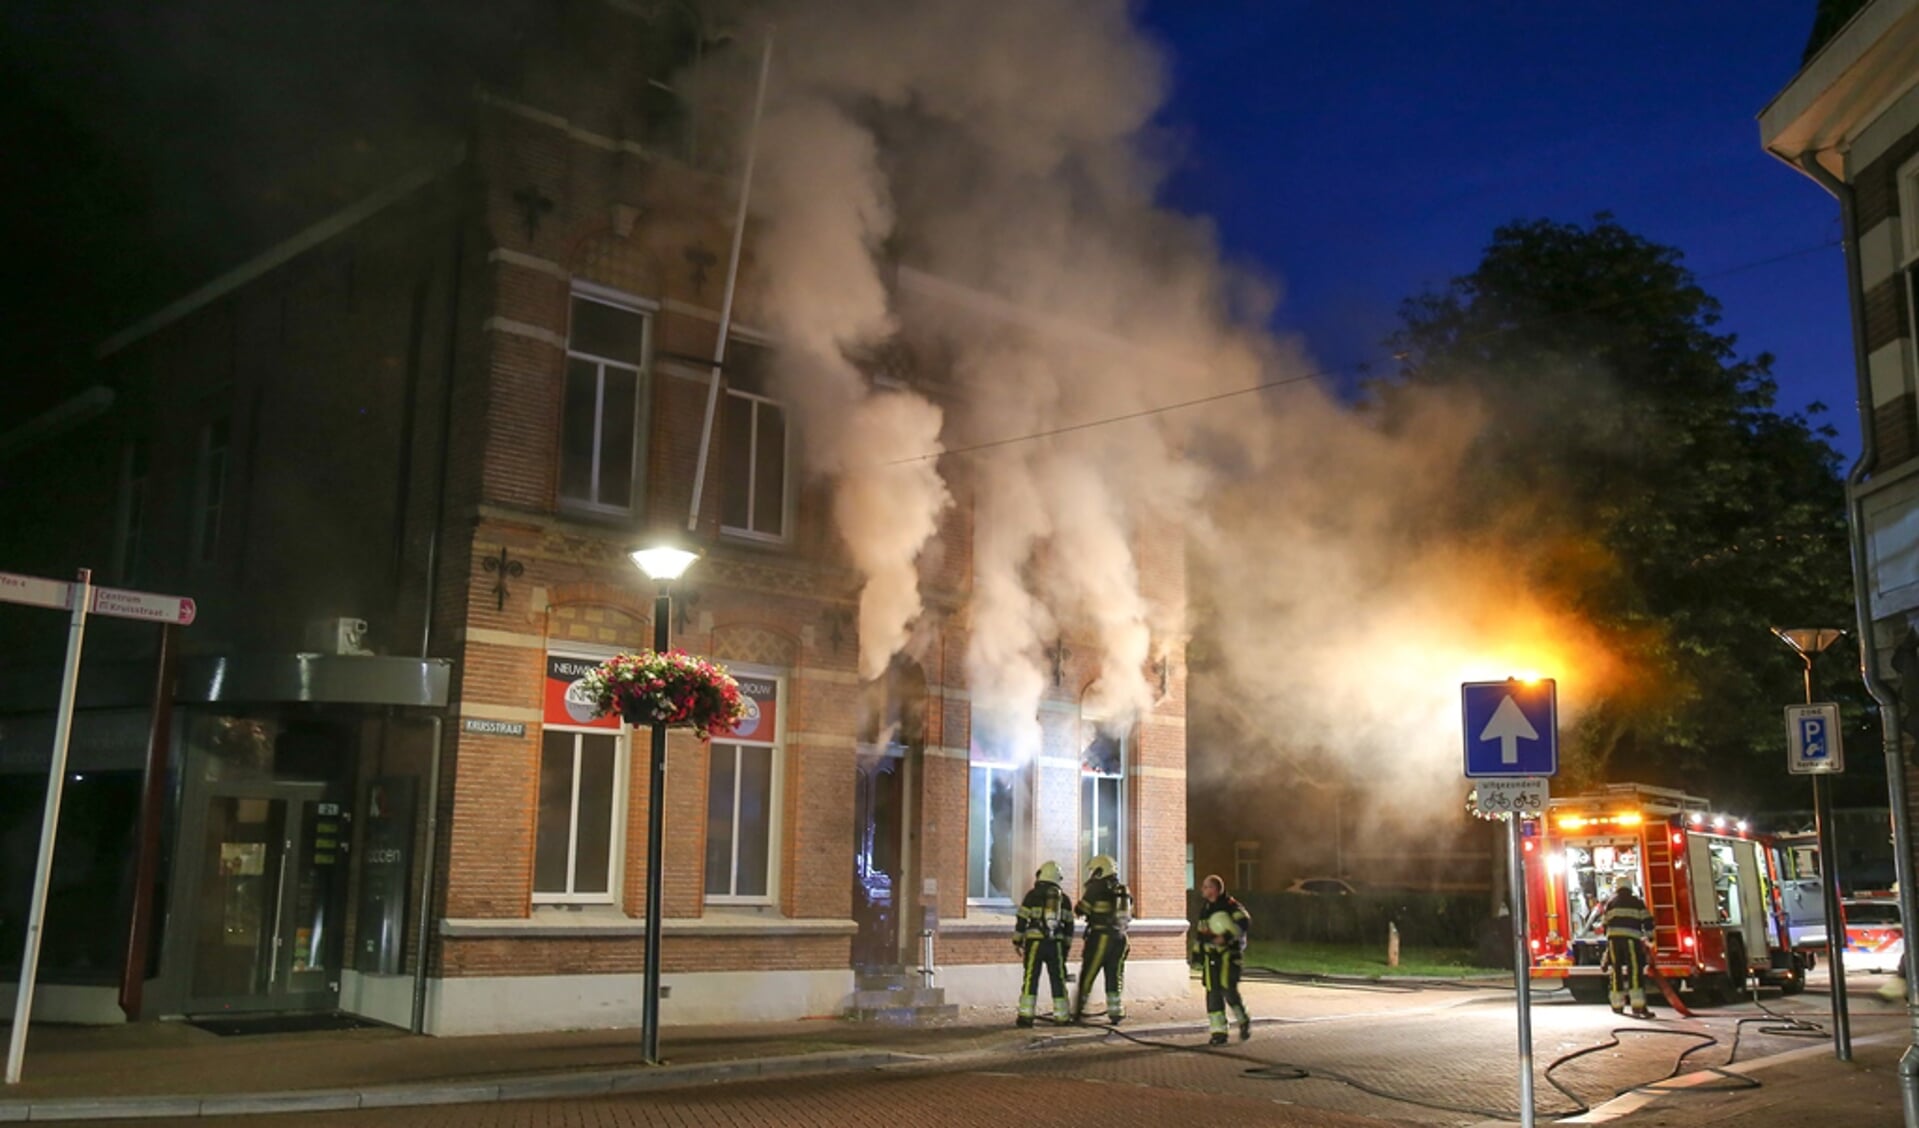 De brand brak woensdagnacht uit ( Foto's : Maickel Keijzers / Hendriks Multimedia )